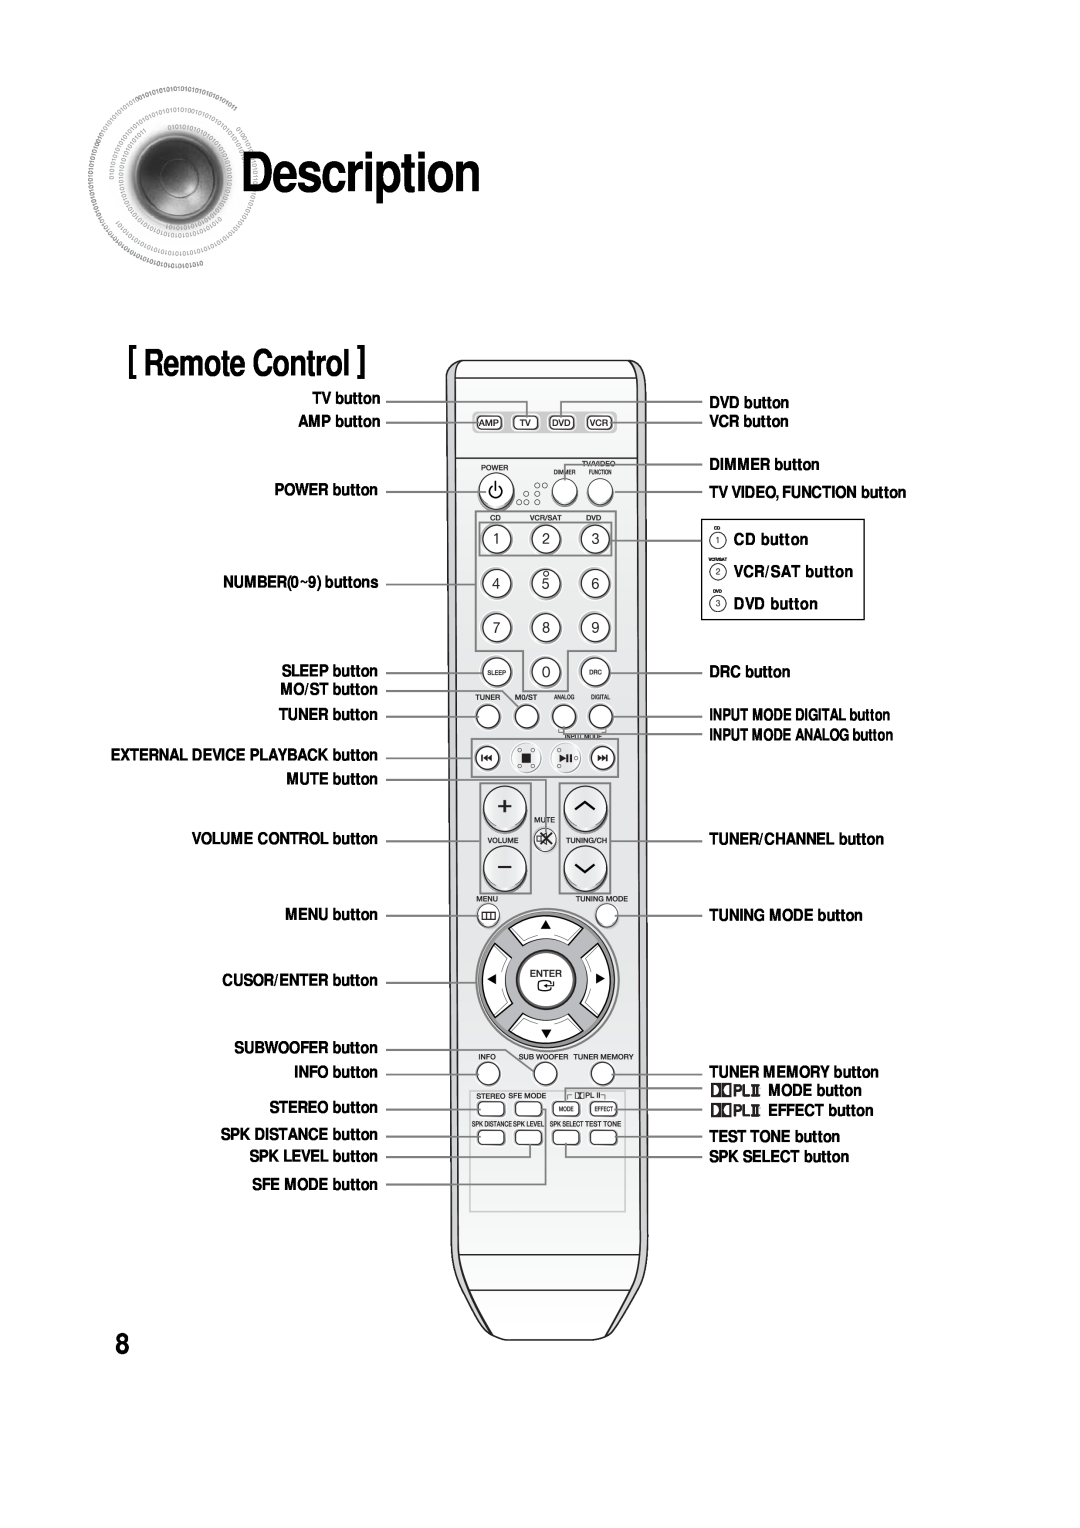 Samsung 20060510083254531 Remote Control, Description, TV button AMP button POWER button, TUNER button, TUNING MODE button 